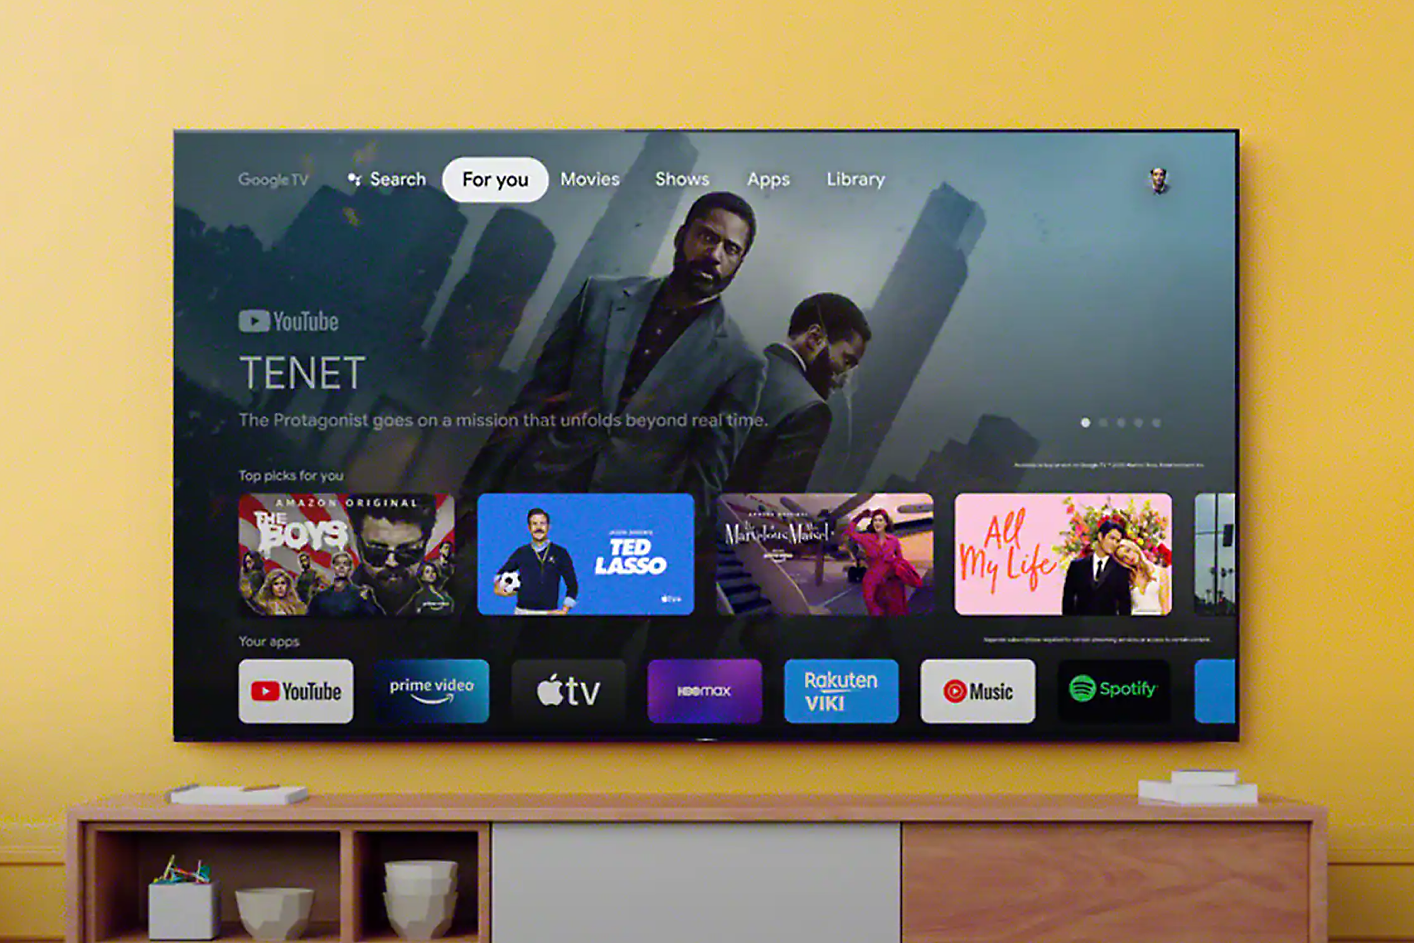 Екран телевізора, на якому показано інтерфейс із пошуком і вибором додатків, а на задньому плані – сцену з фільму "Тенет".